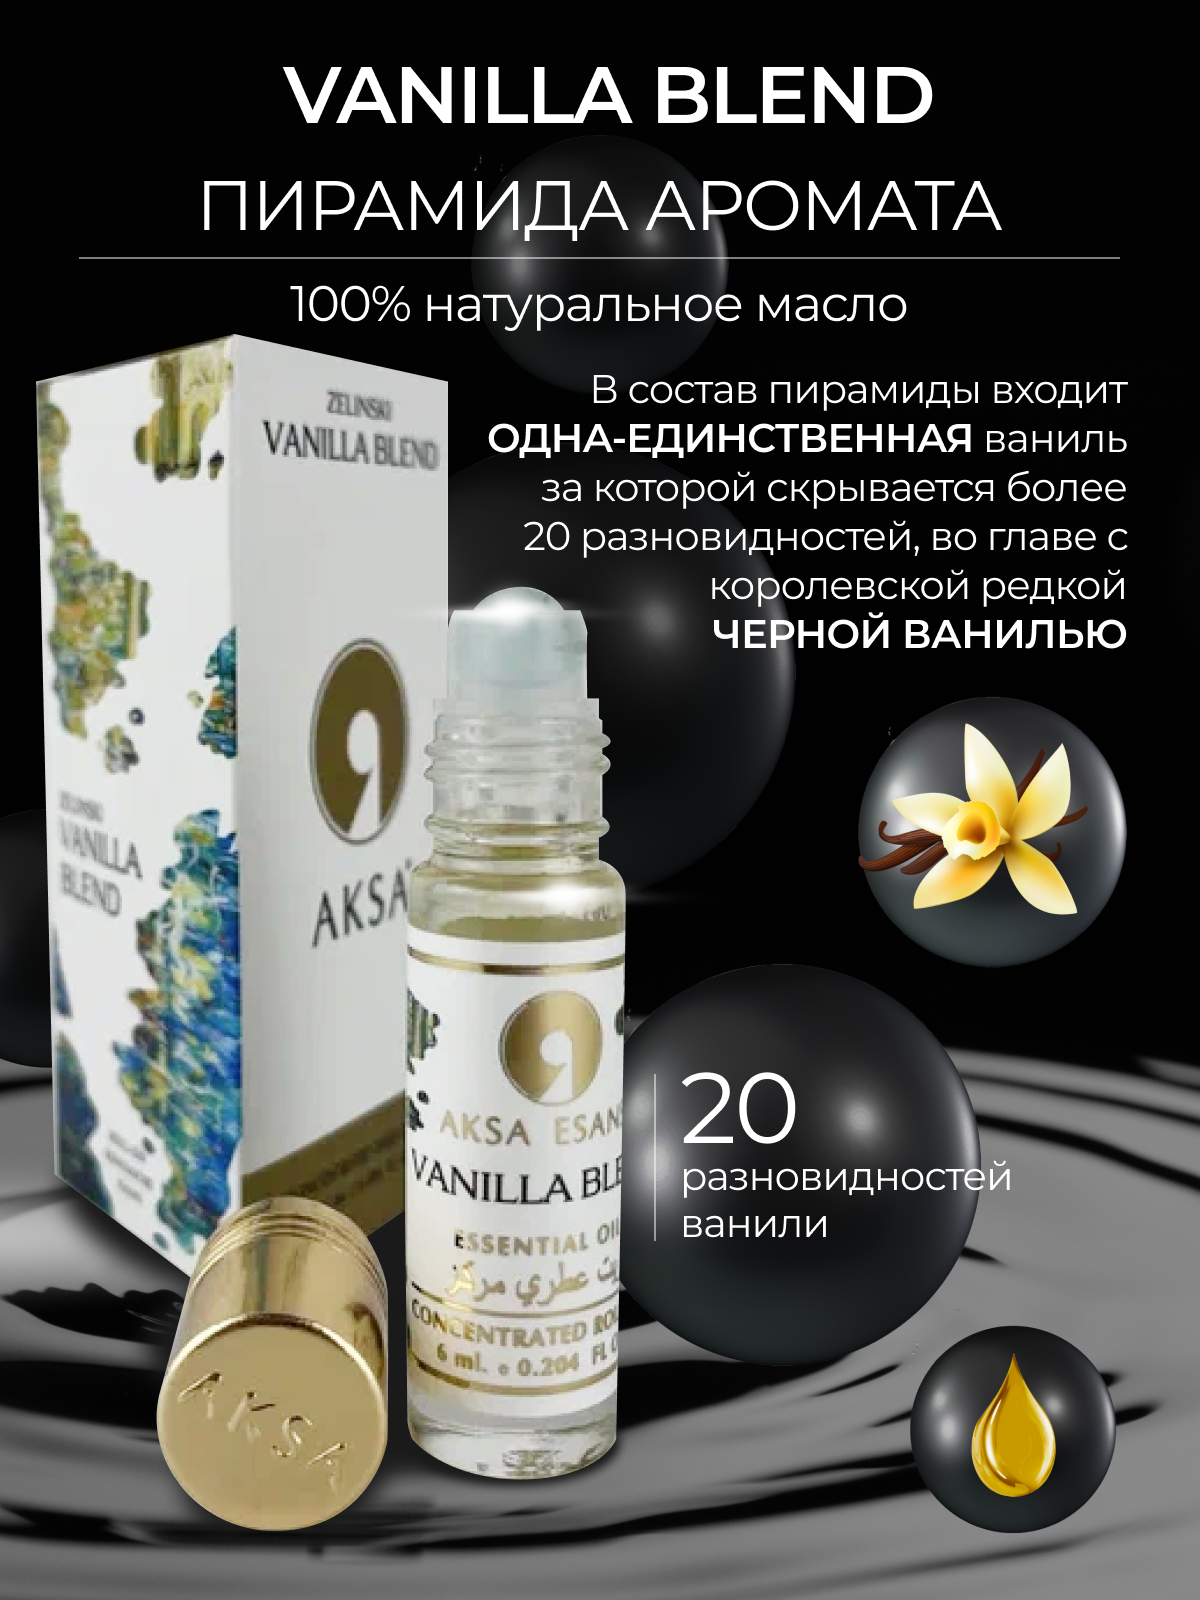 Масляные женские духи Aksa Esans Vanilla Blend, Ванилла Бленд, ваниль парфюм, 6 мл